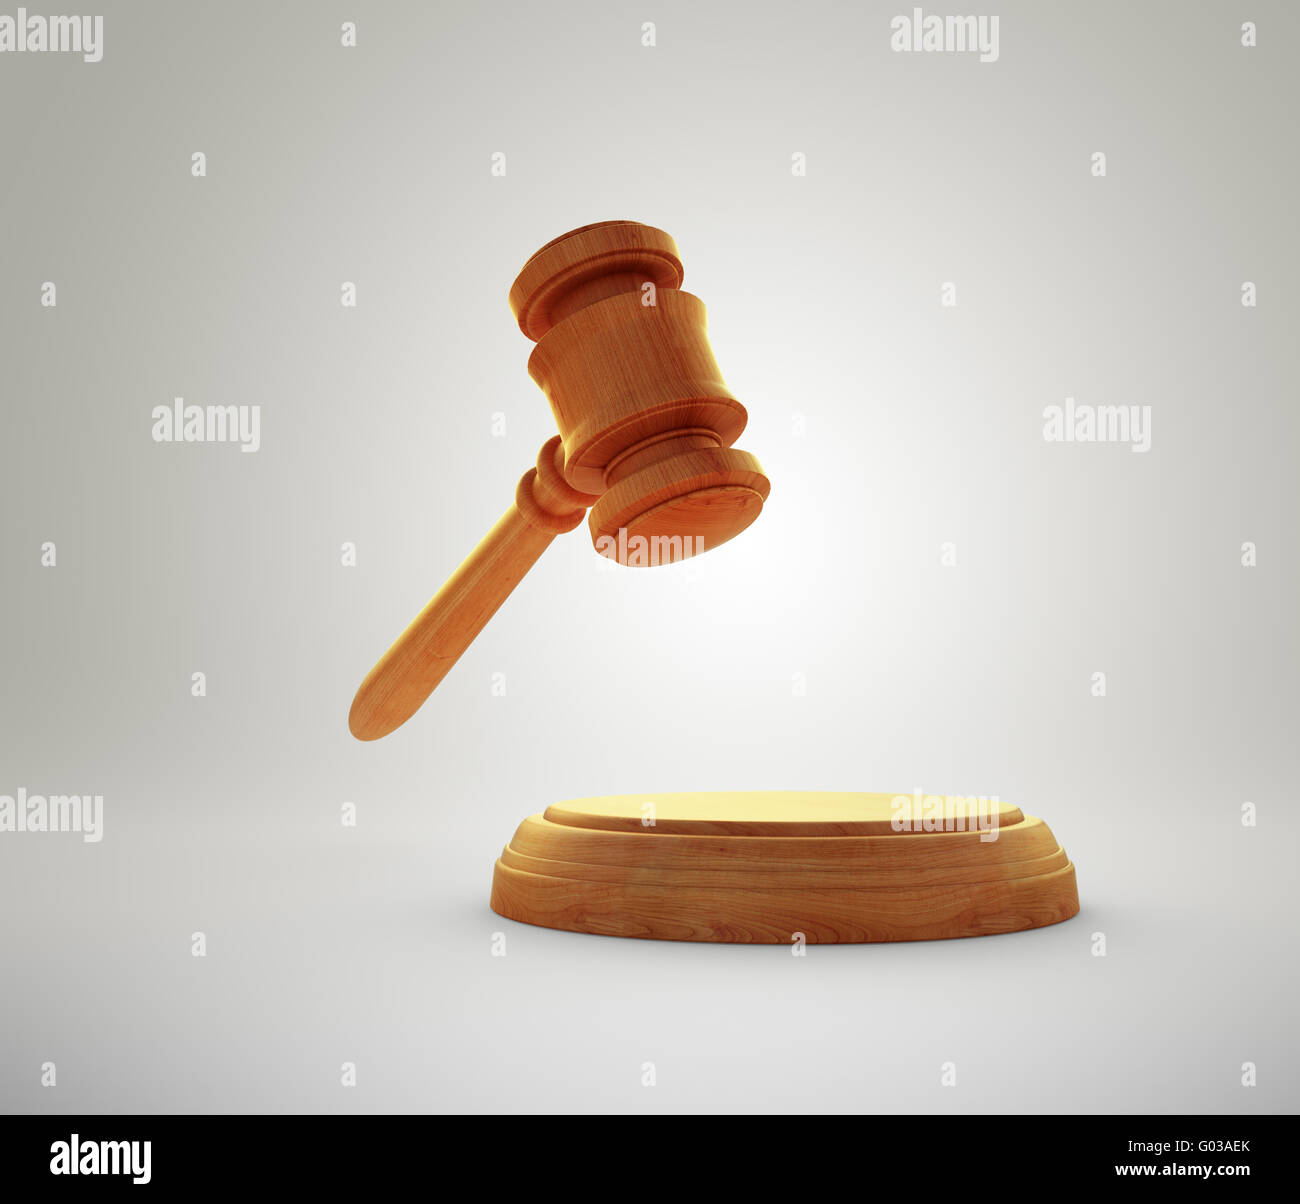 Hammer - Auktion Gebote oder Gerechtigkeit Konzept Bild Stockfoto